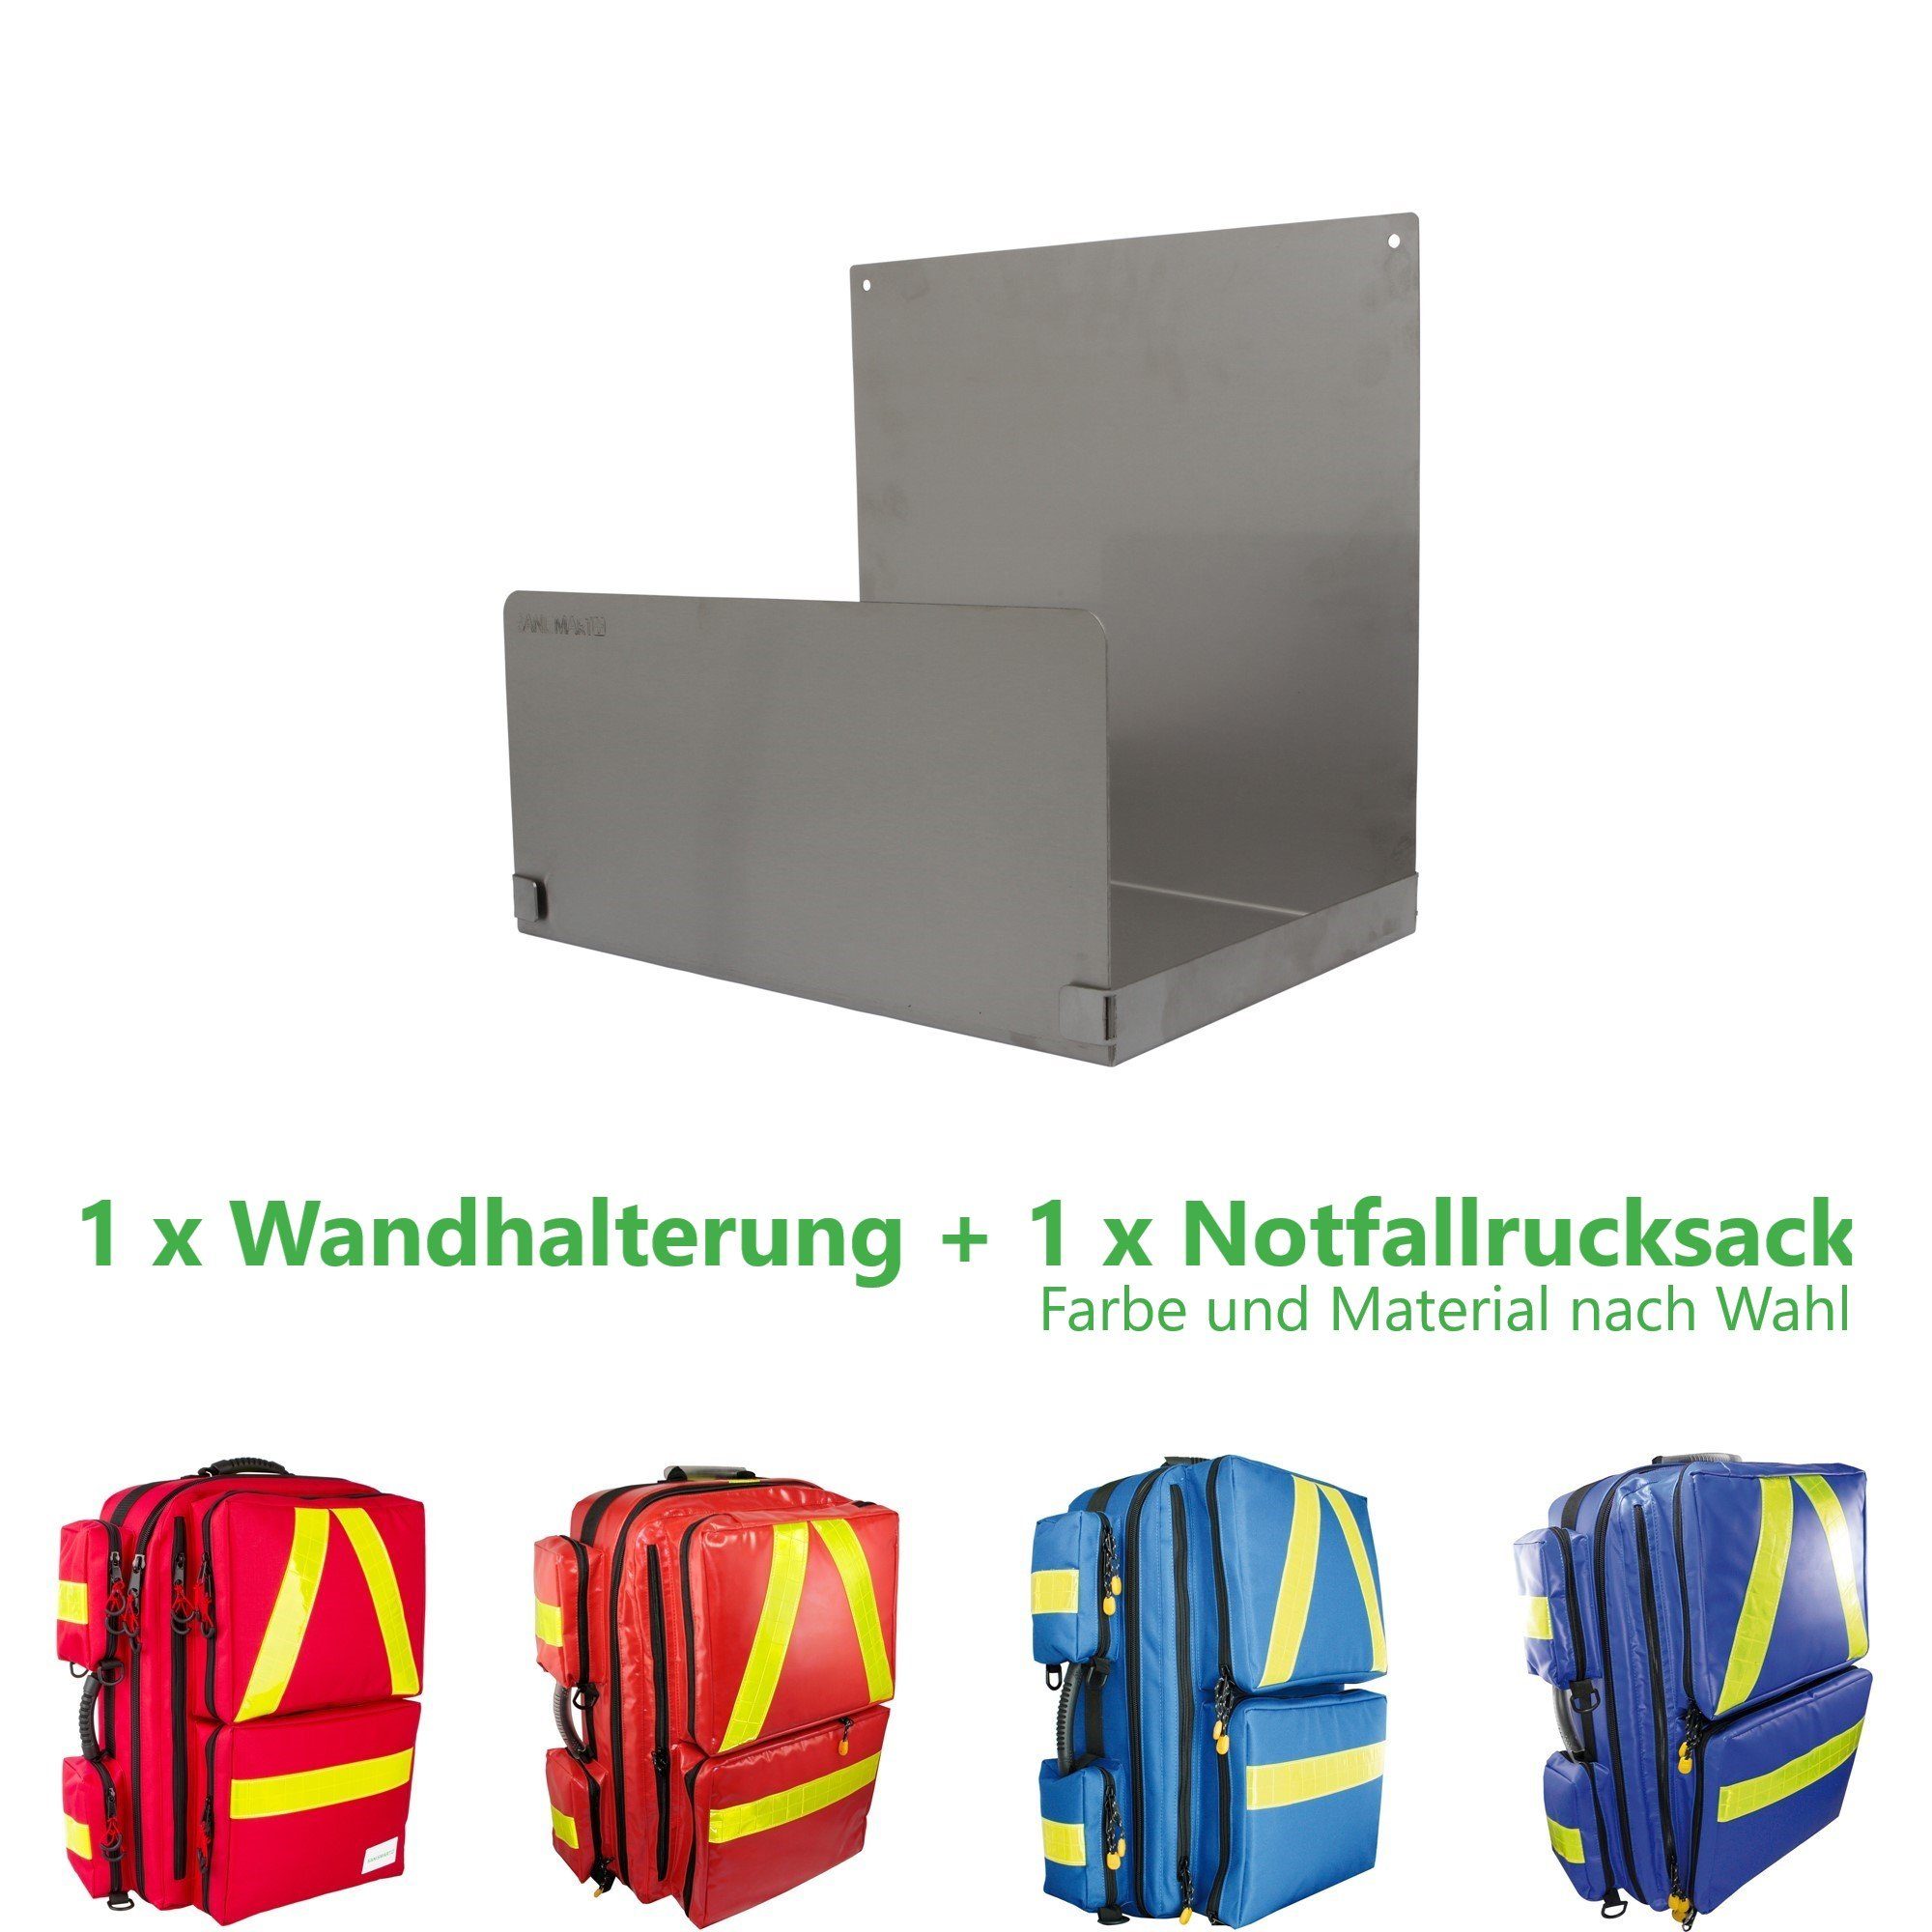 SANISMART Arzttasche Notfallrucksack für Notfallrucksäcke Rot XL mit Wandhalterung Medicus Nylon